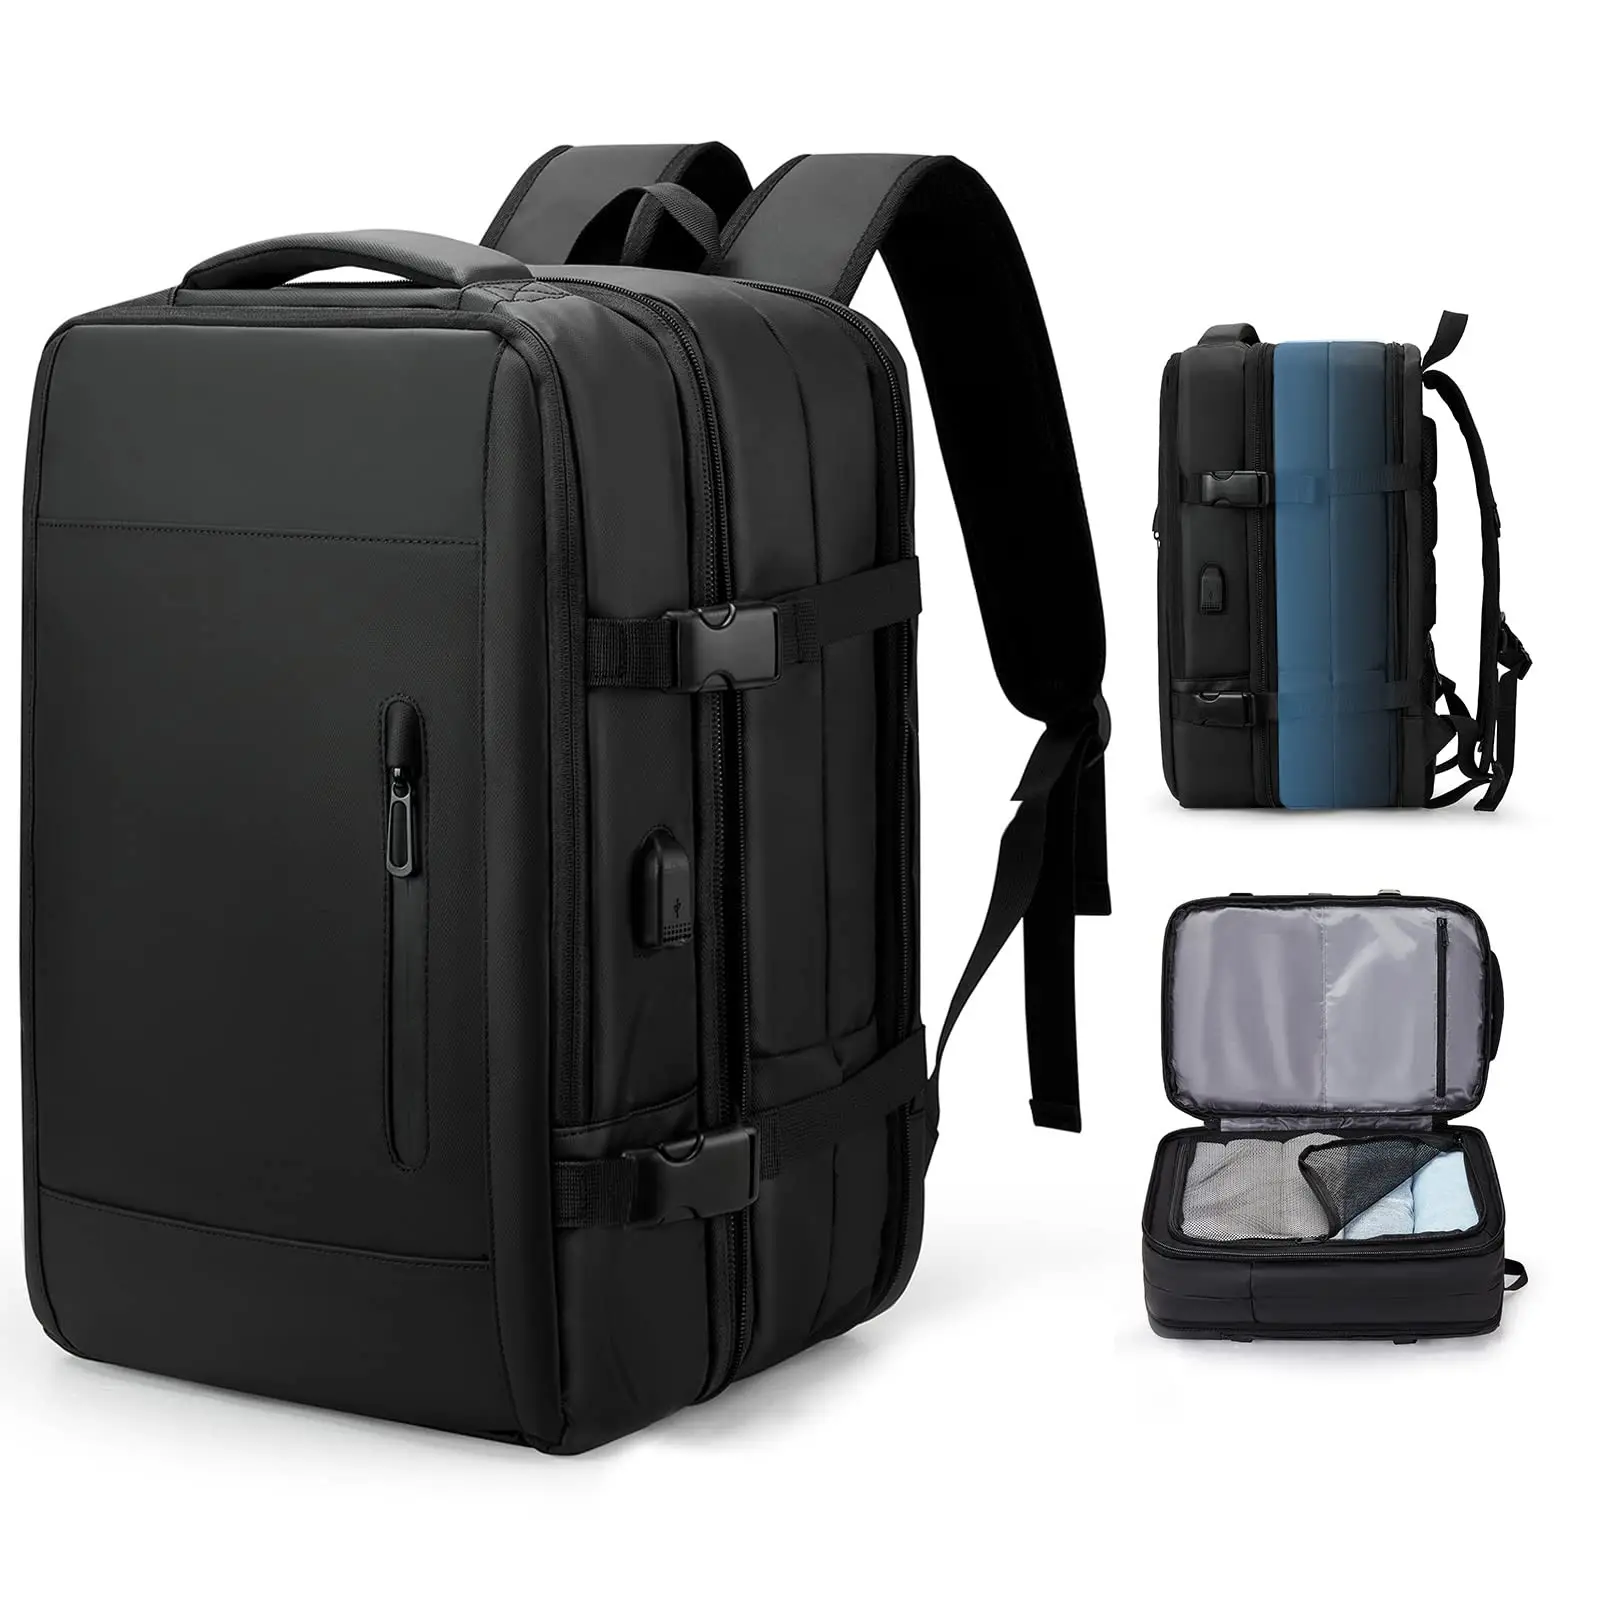 Mochila de viagem para mulheres Homens Airline Airplane Aprovado Weekender Mochila Carry On Laptop Backpack com porta de carregamento USB